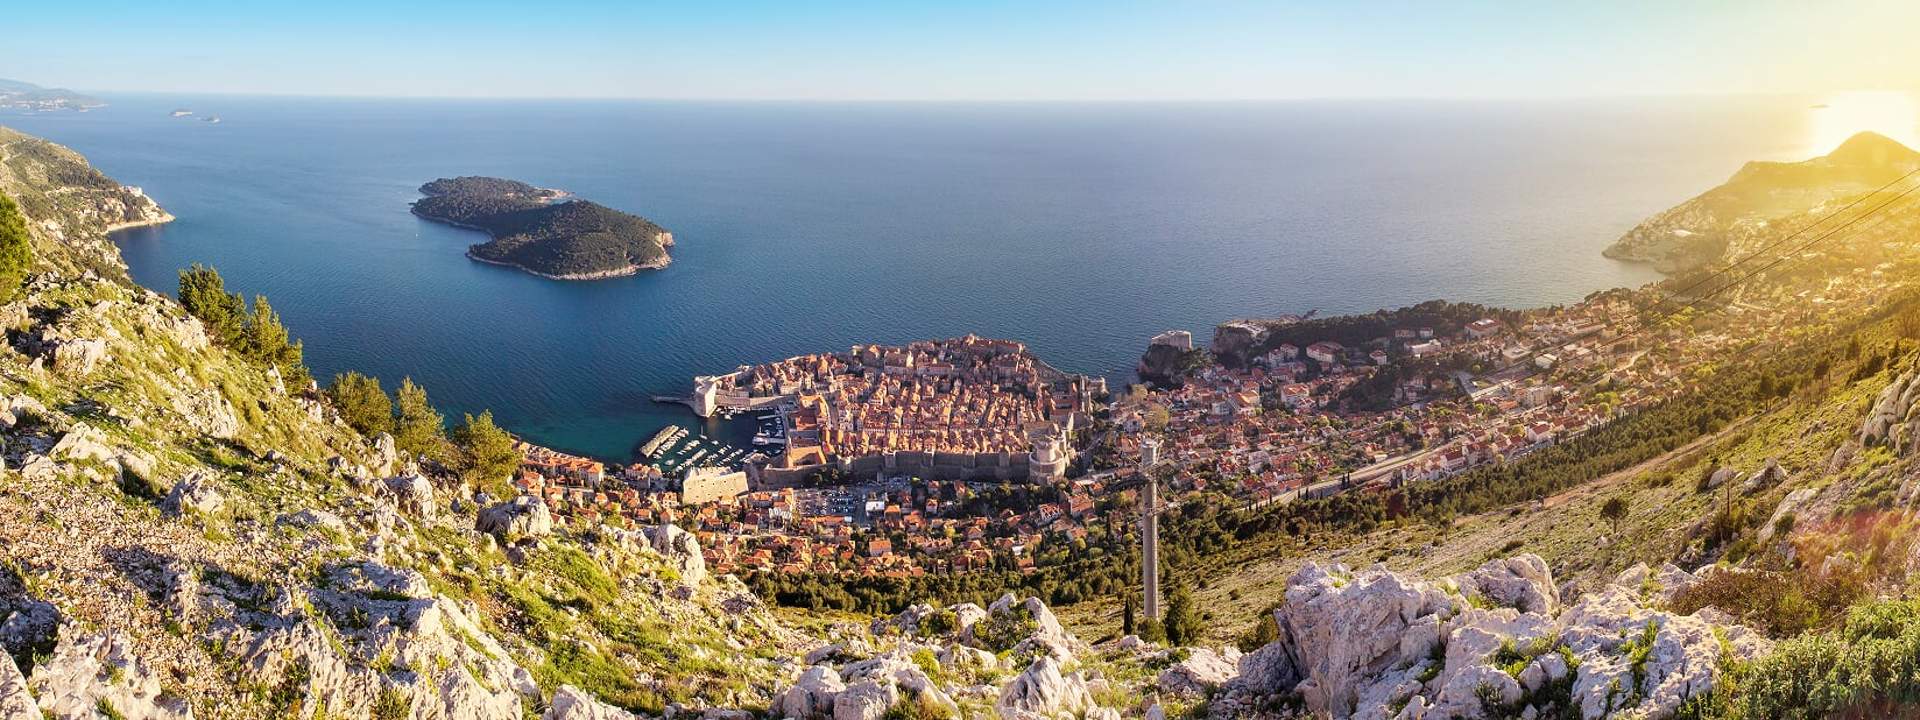 Approfitta dello charme della costa Adriatica e delle sue isole